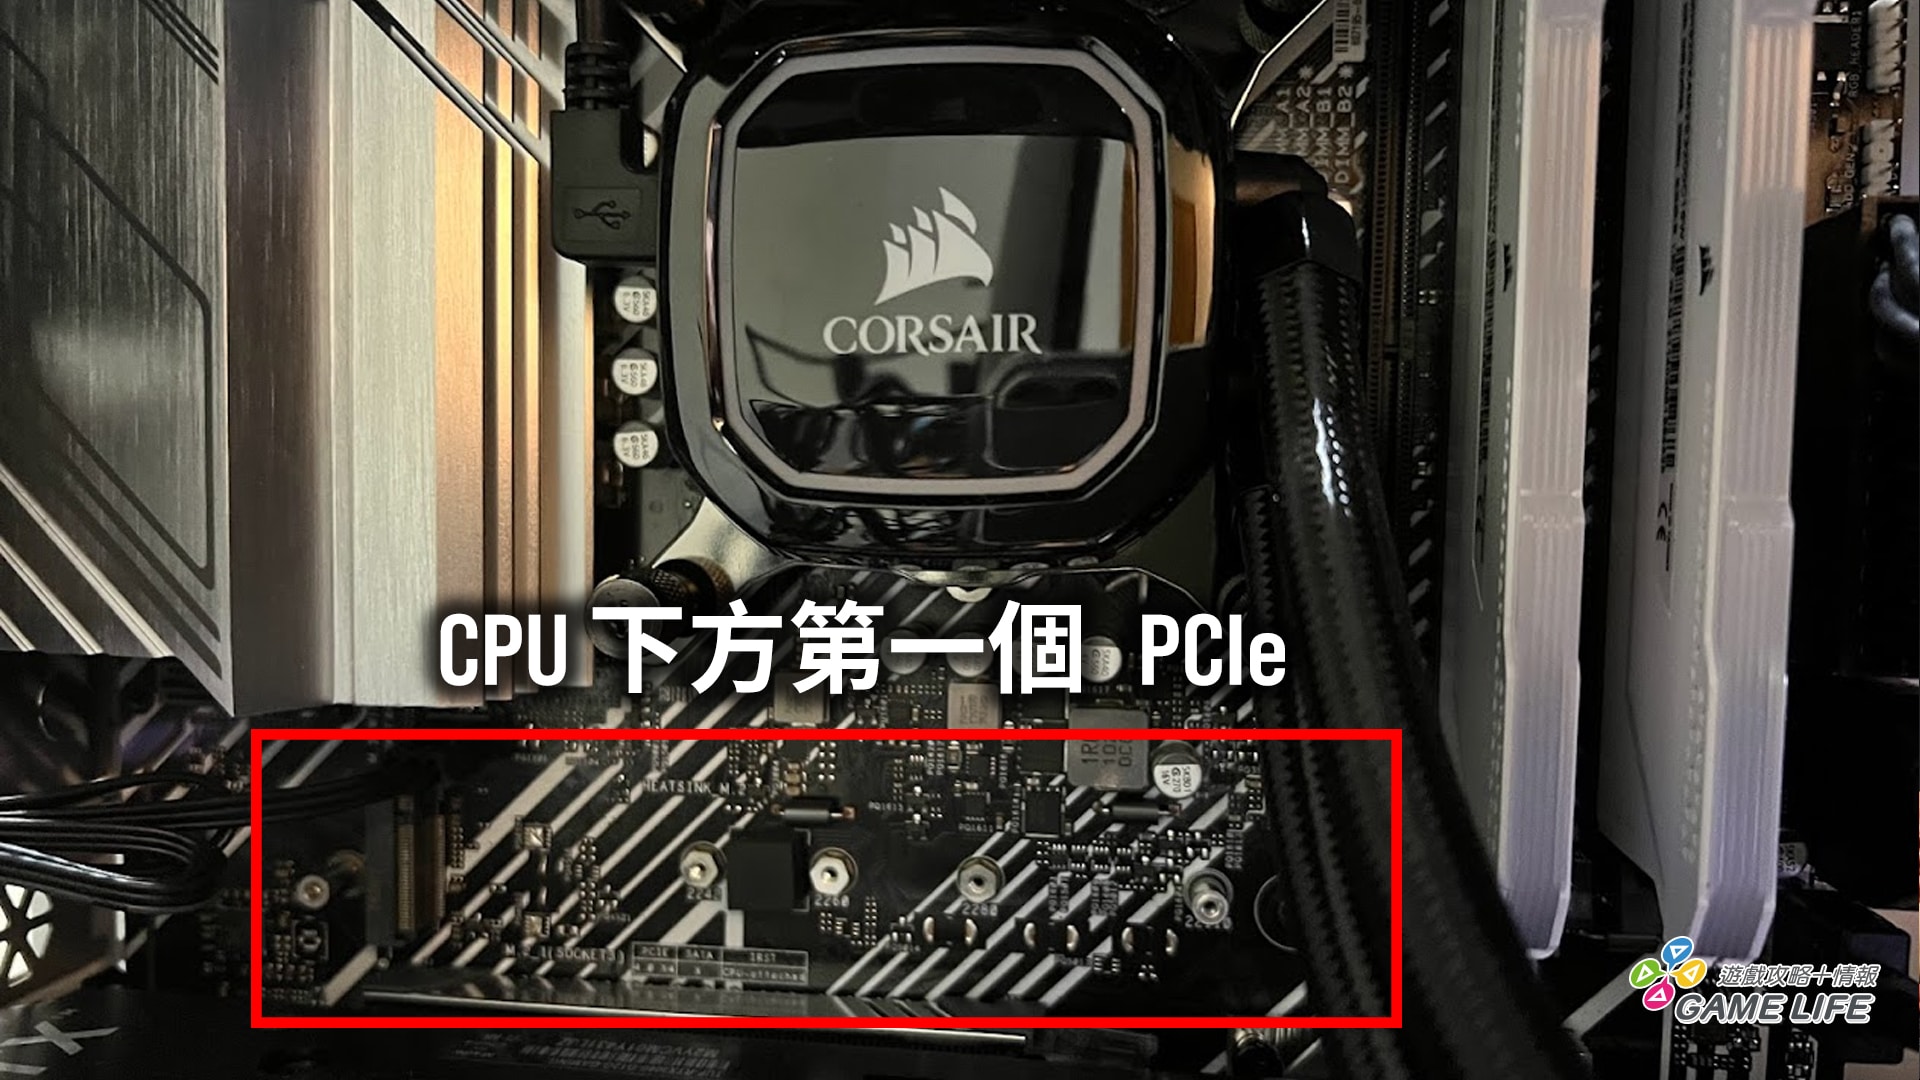 若你的 CPU 並非第 11 代，這個插槽是不會有反應的喔！